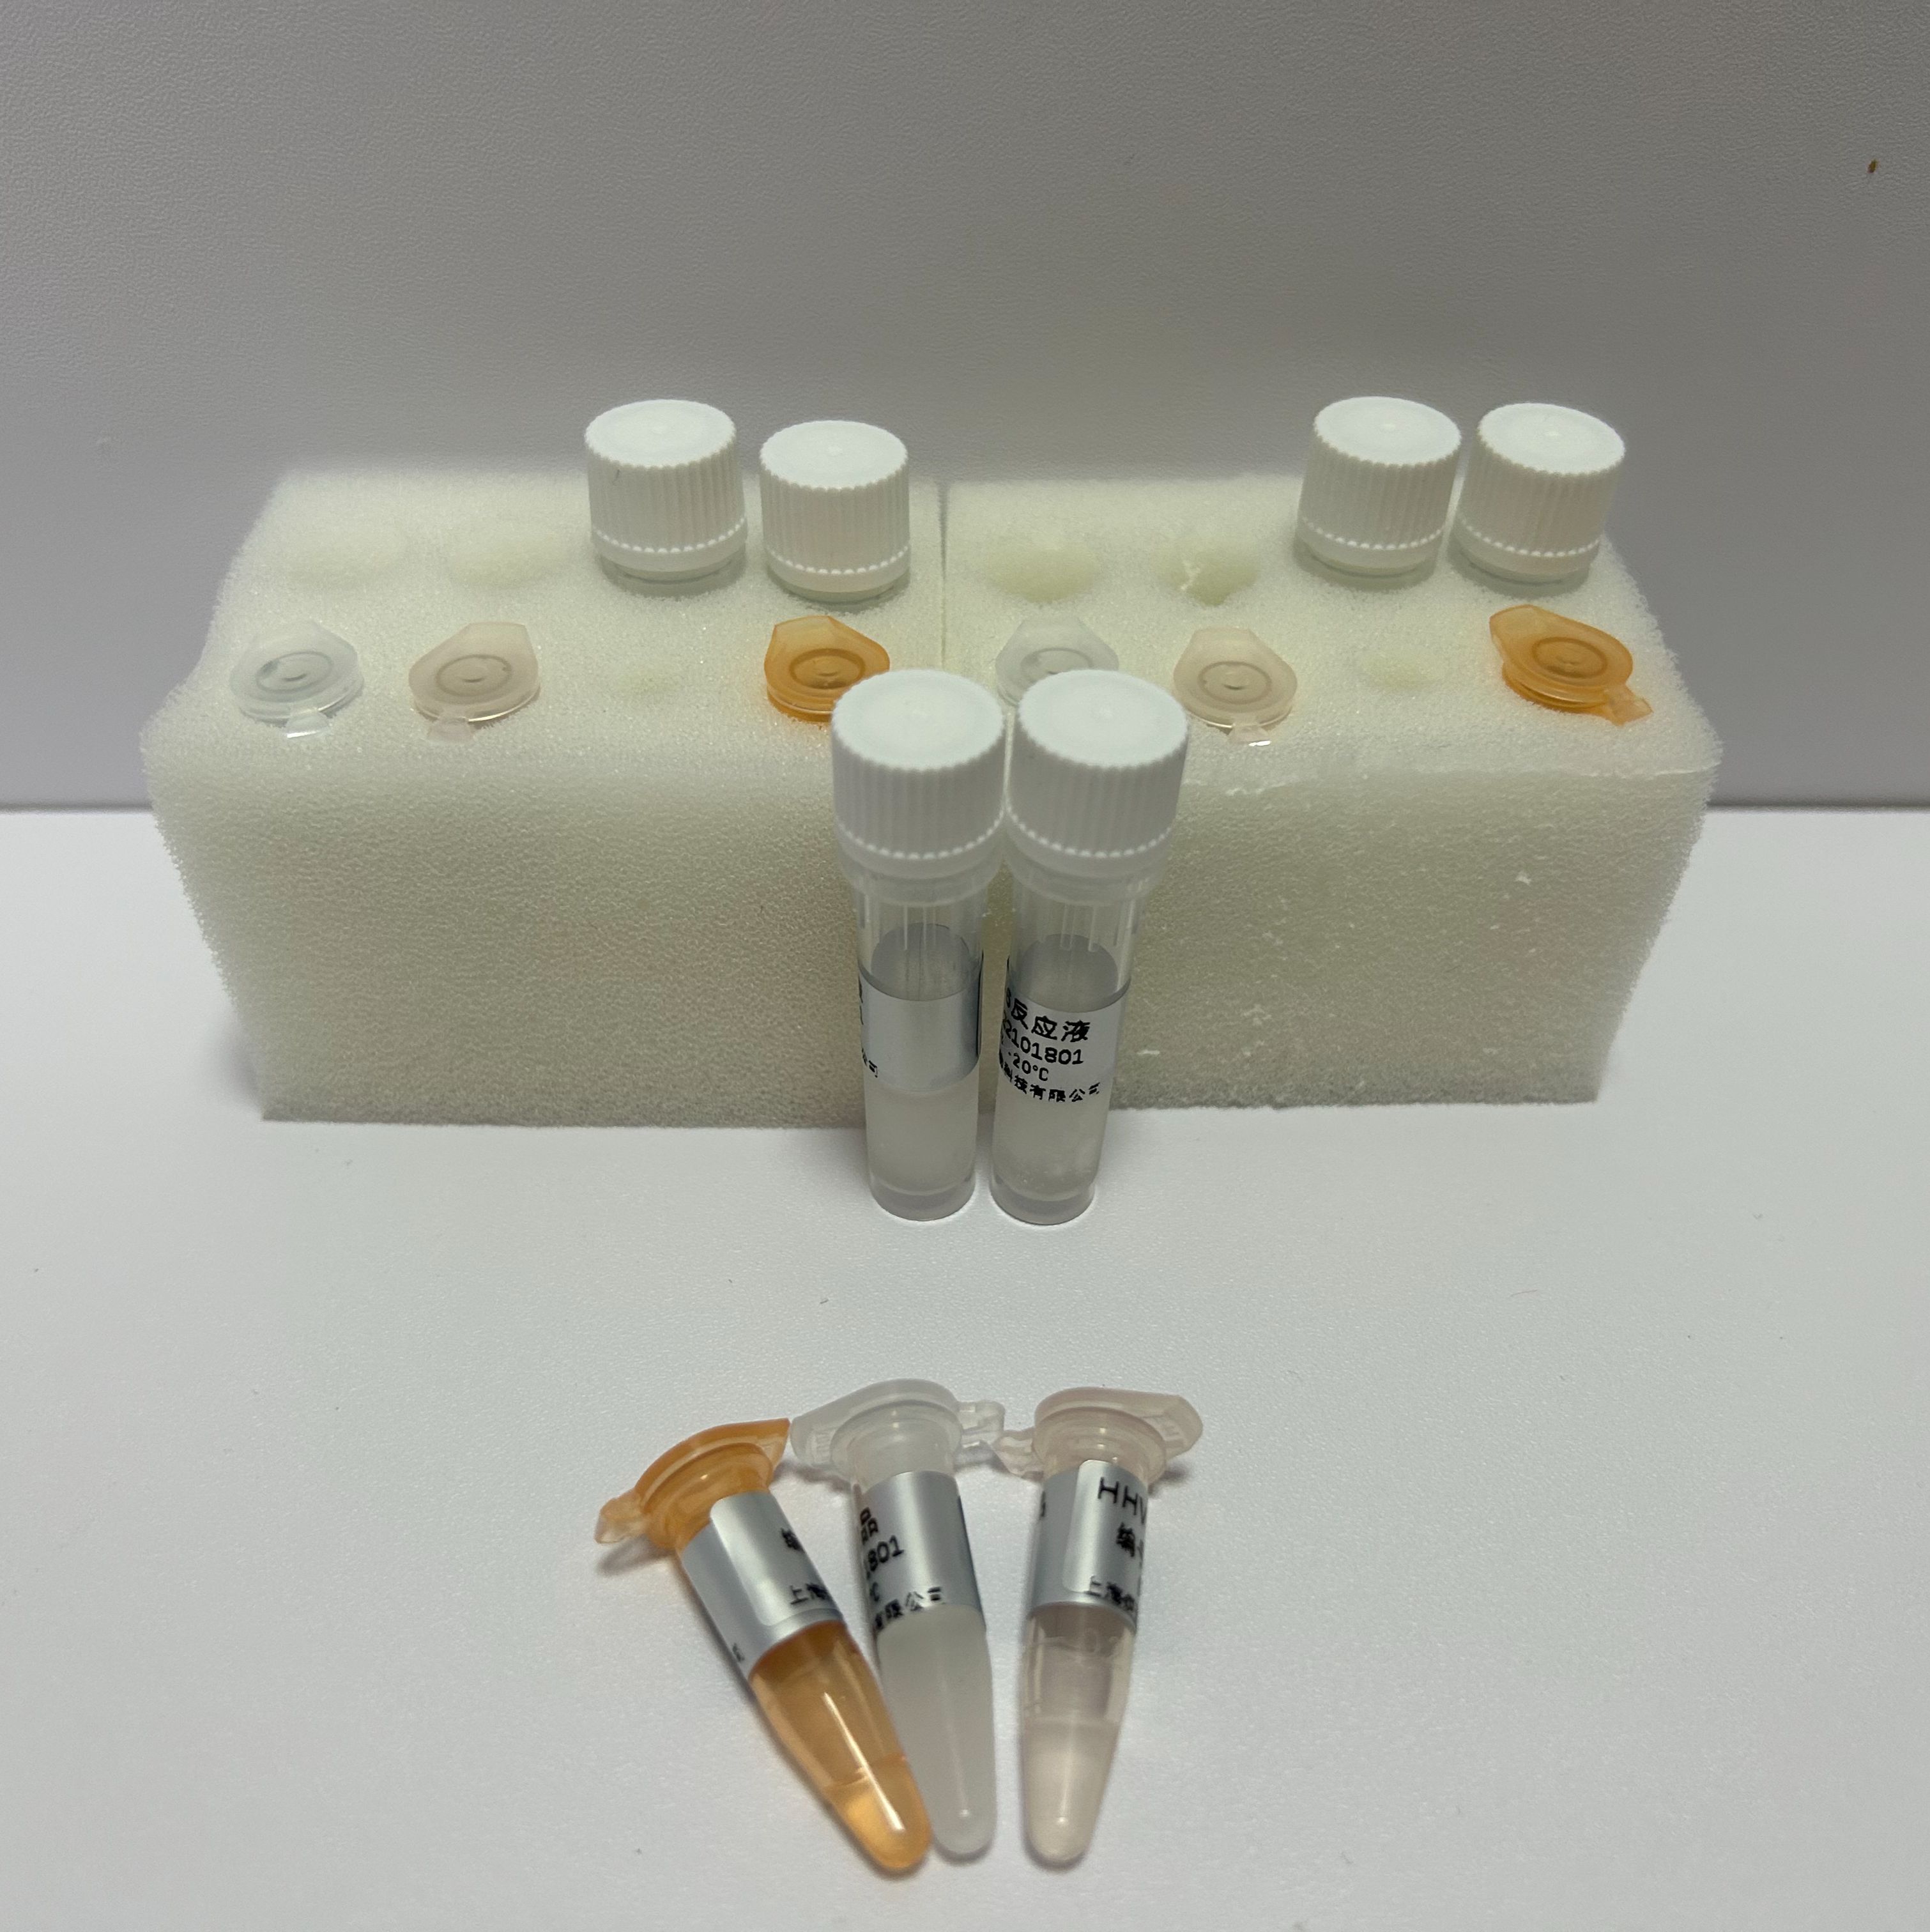 塞内卡病毒RT-PCR试剂盒